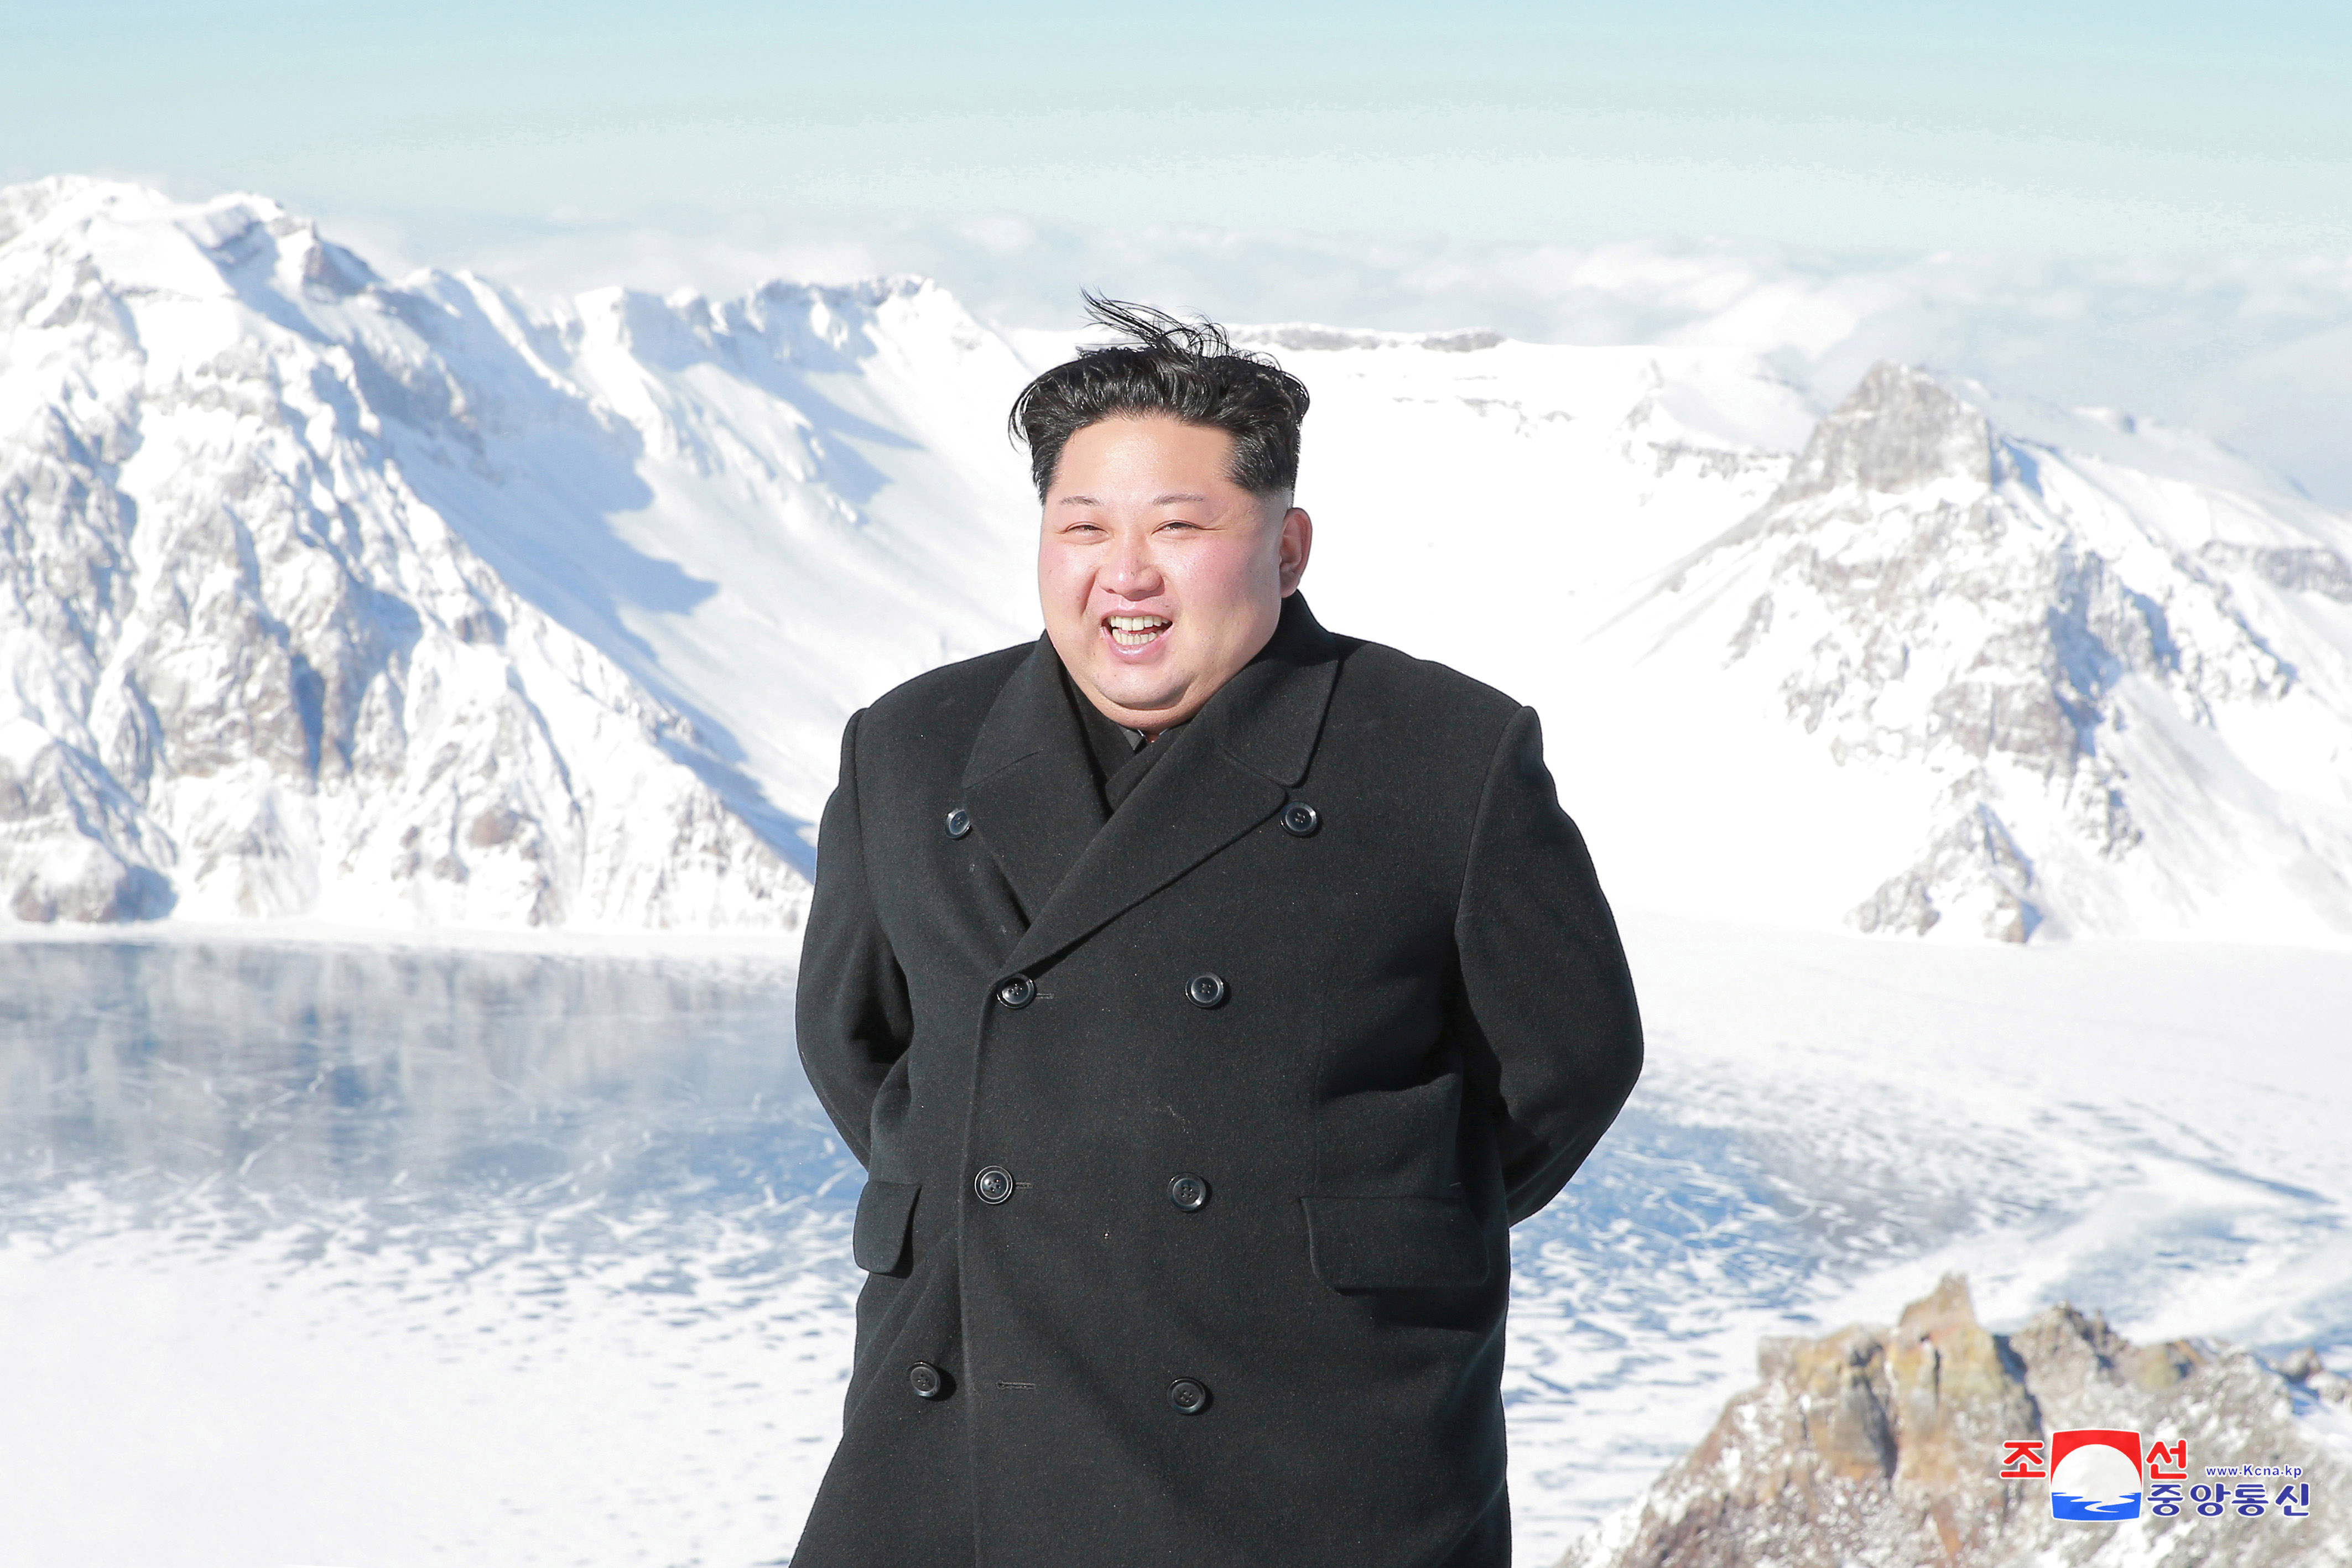 زعيم كوريا الشمالية يقف وسط الثلوج على أعلى قمة جبلية